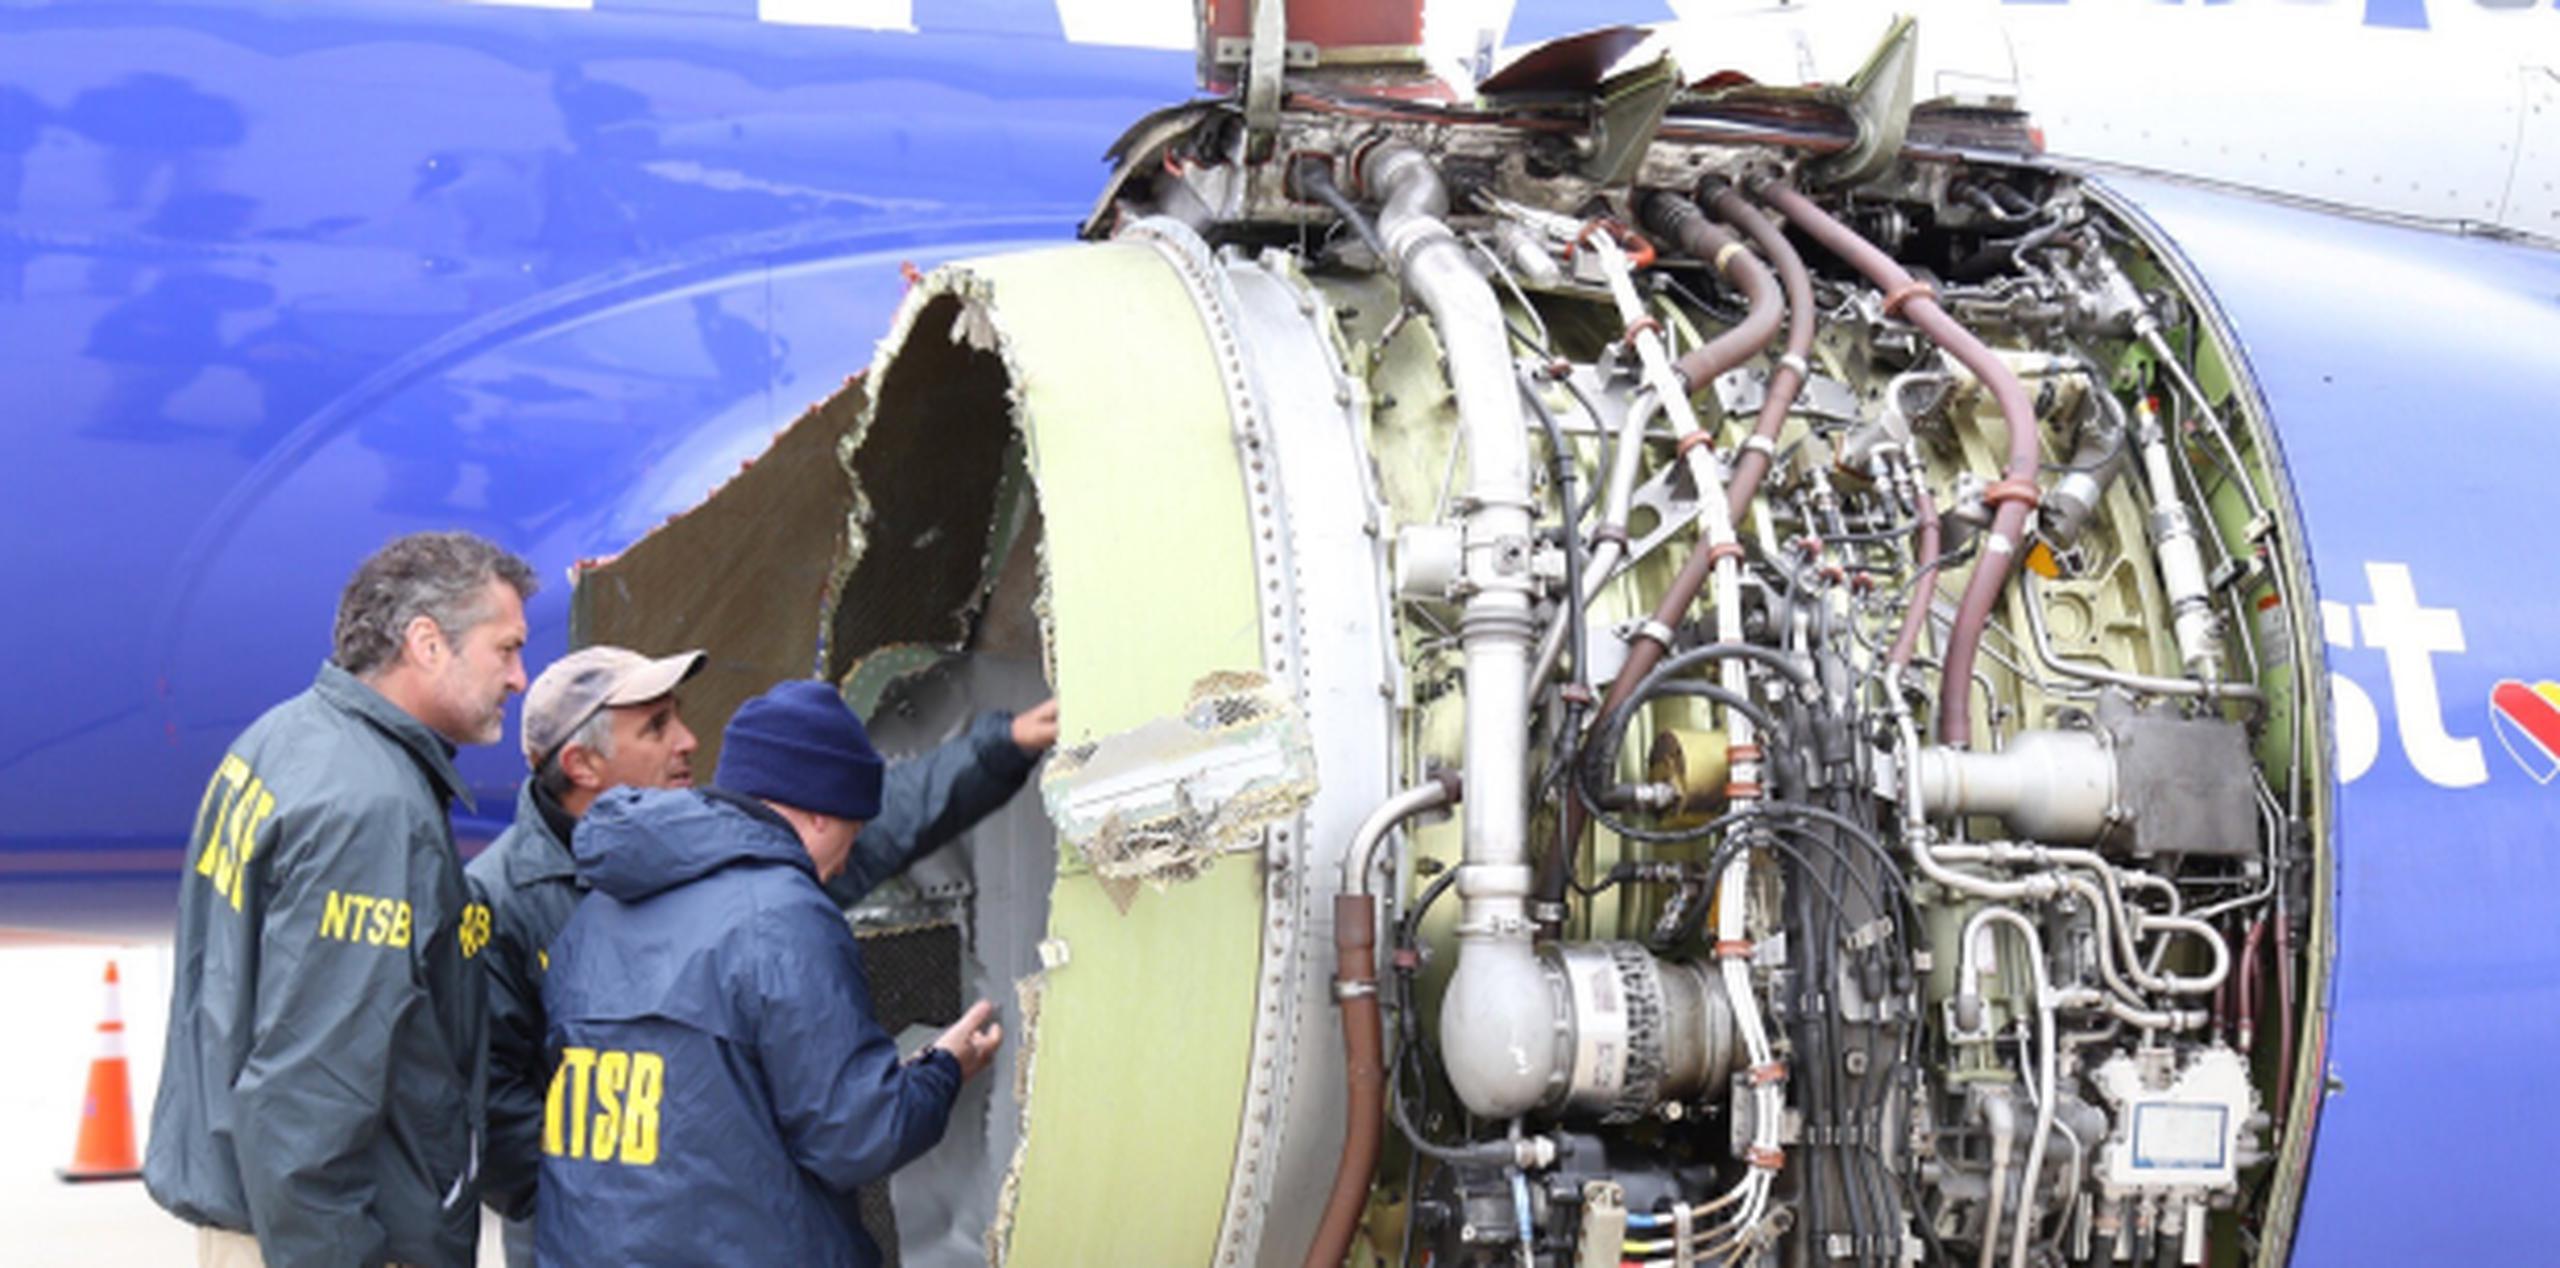 Investigadores examinando el daño al motor del vuelo 1380 de Southwest Airlines. (EFE / Cortesía Junta Nacional de Seguridad del Transporte)